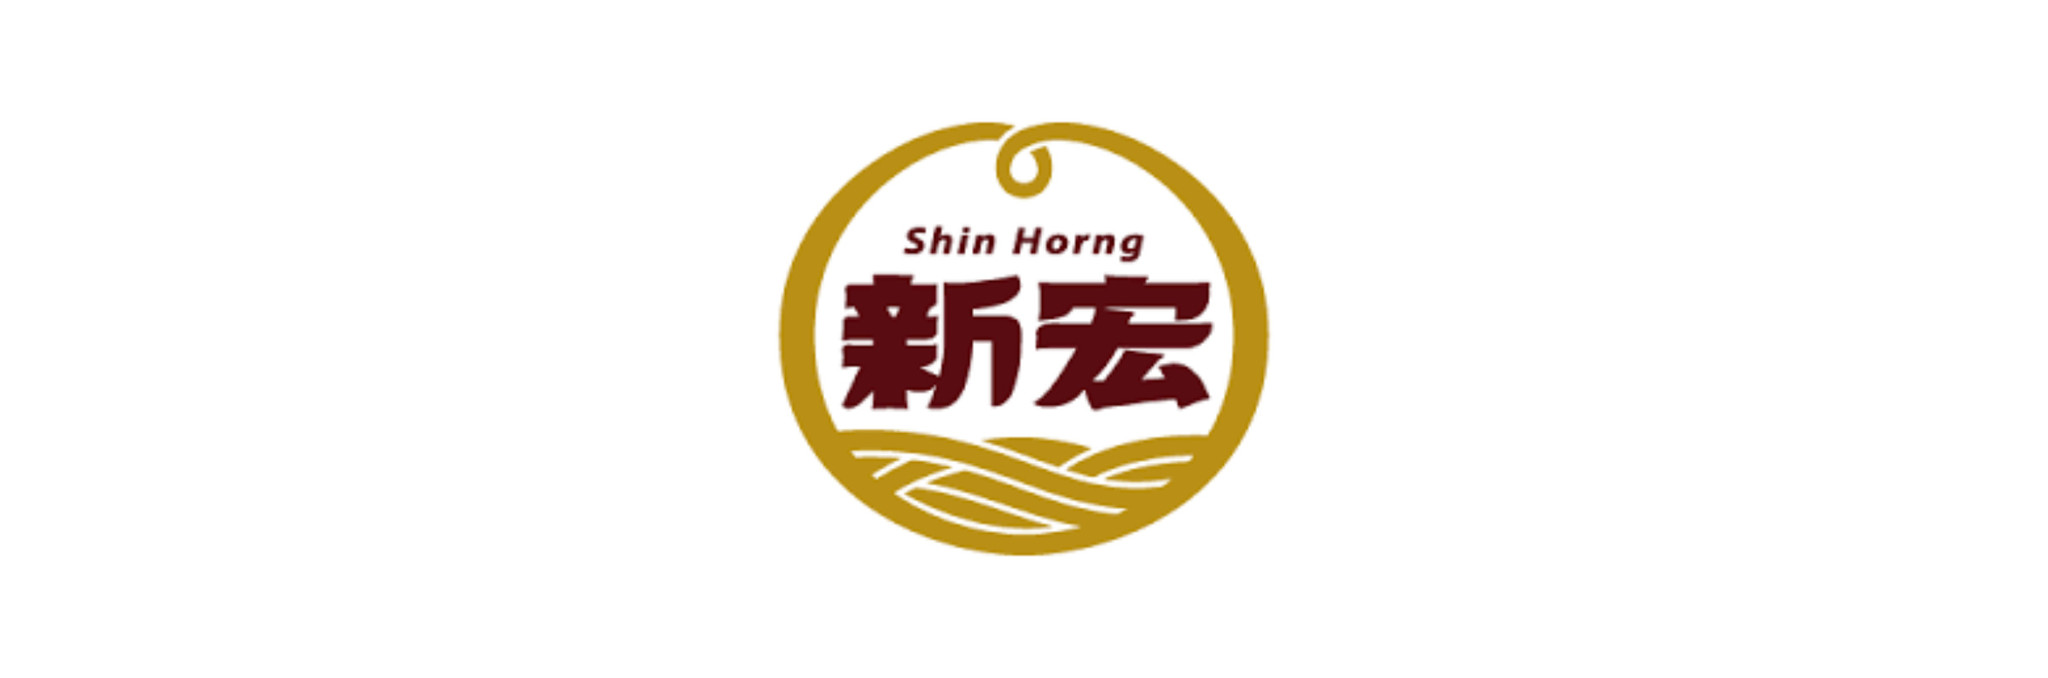 SHIN HORNG